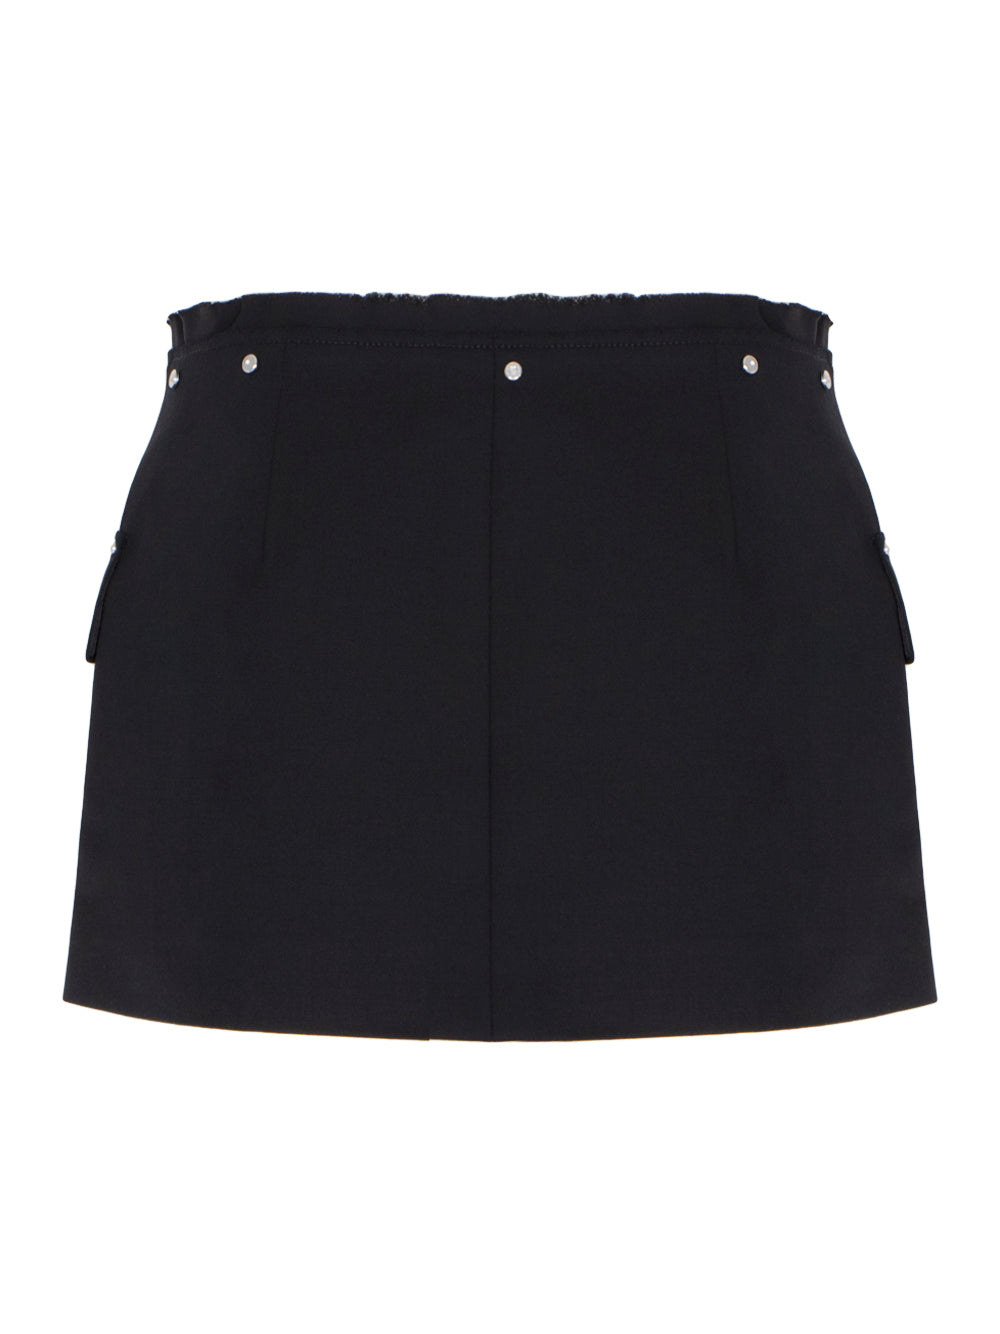 Riveted Blazer Skirt (Black)